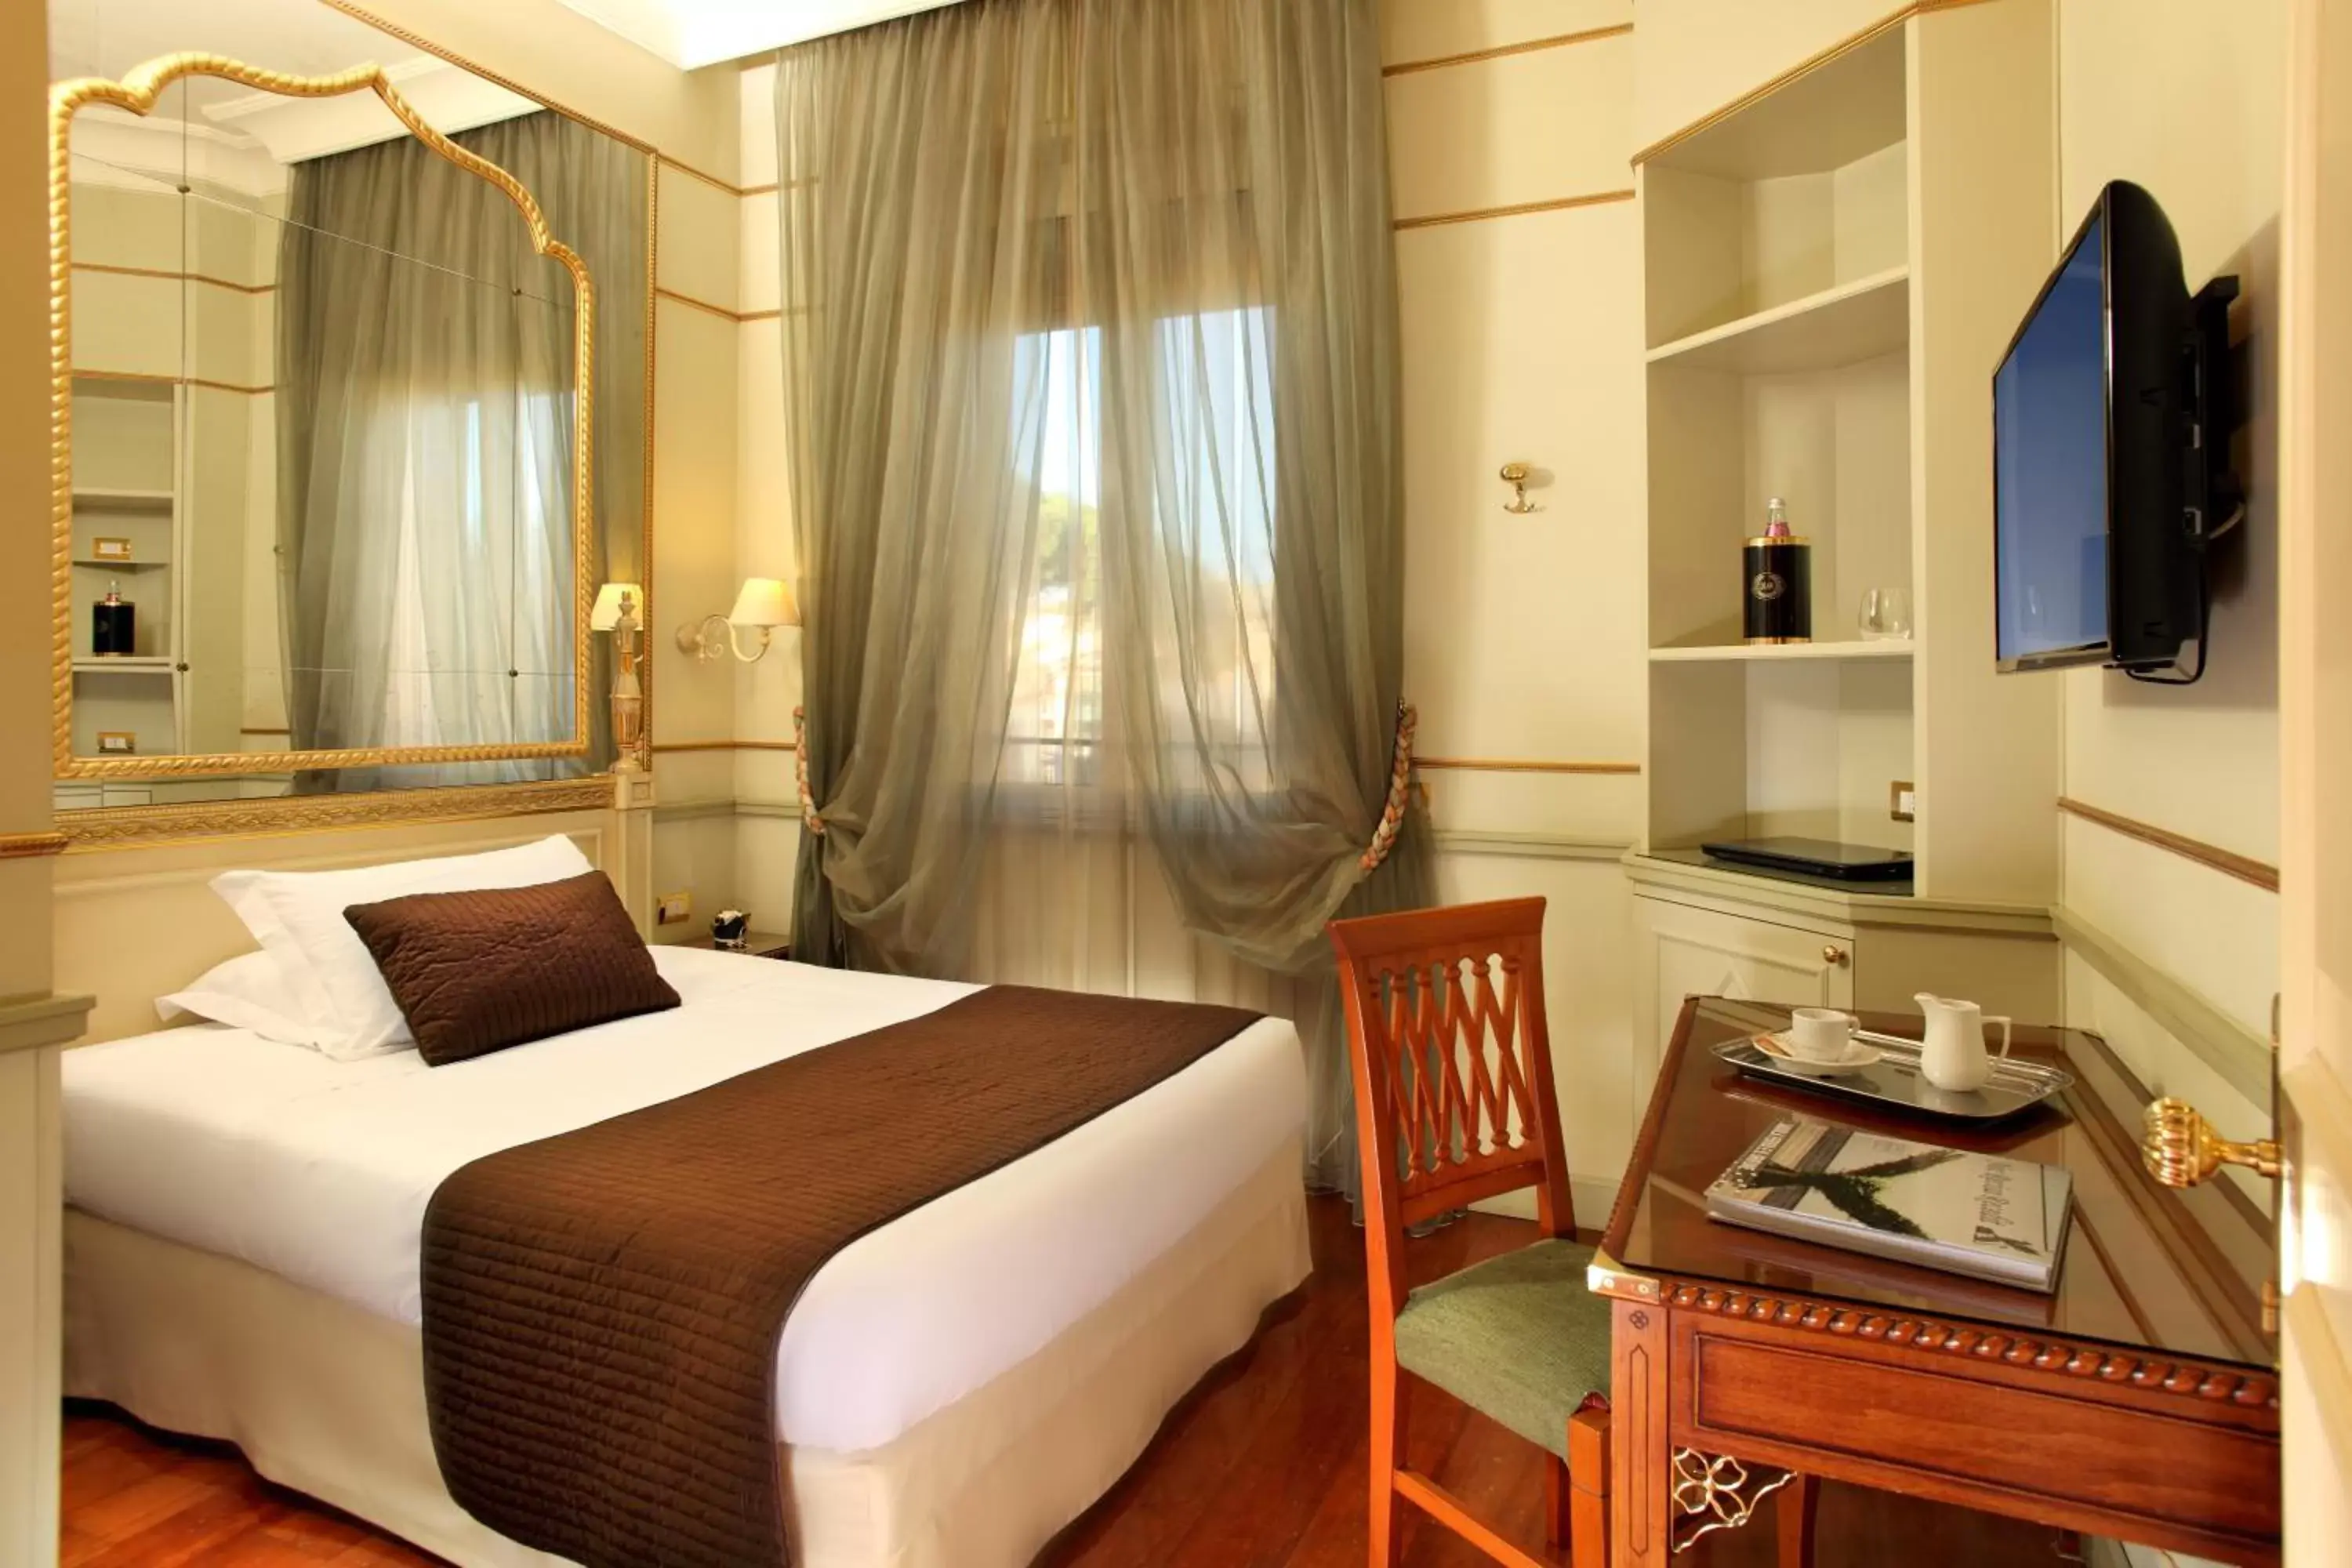 Photo of the whole room in Hotel Degli Aranci